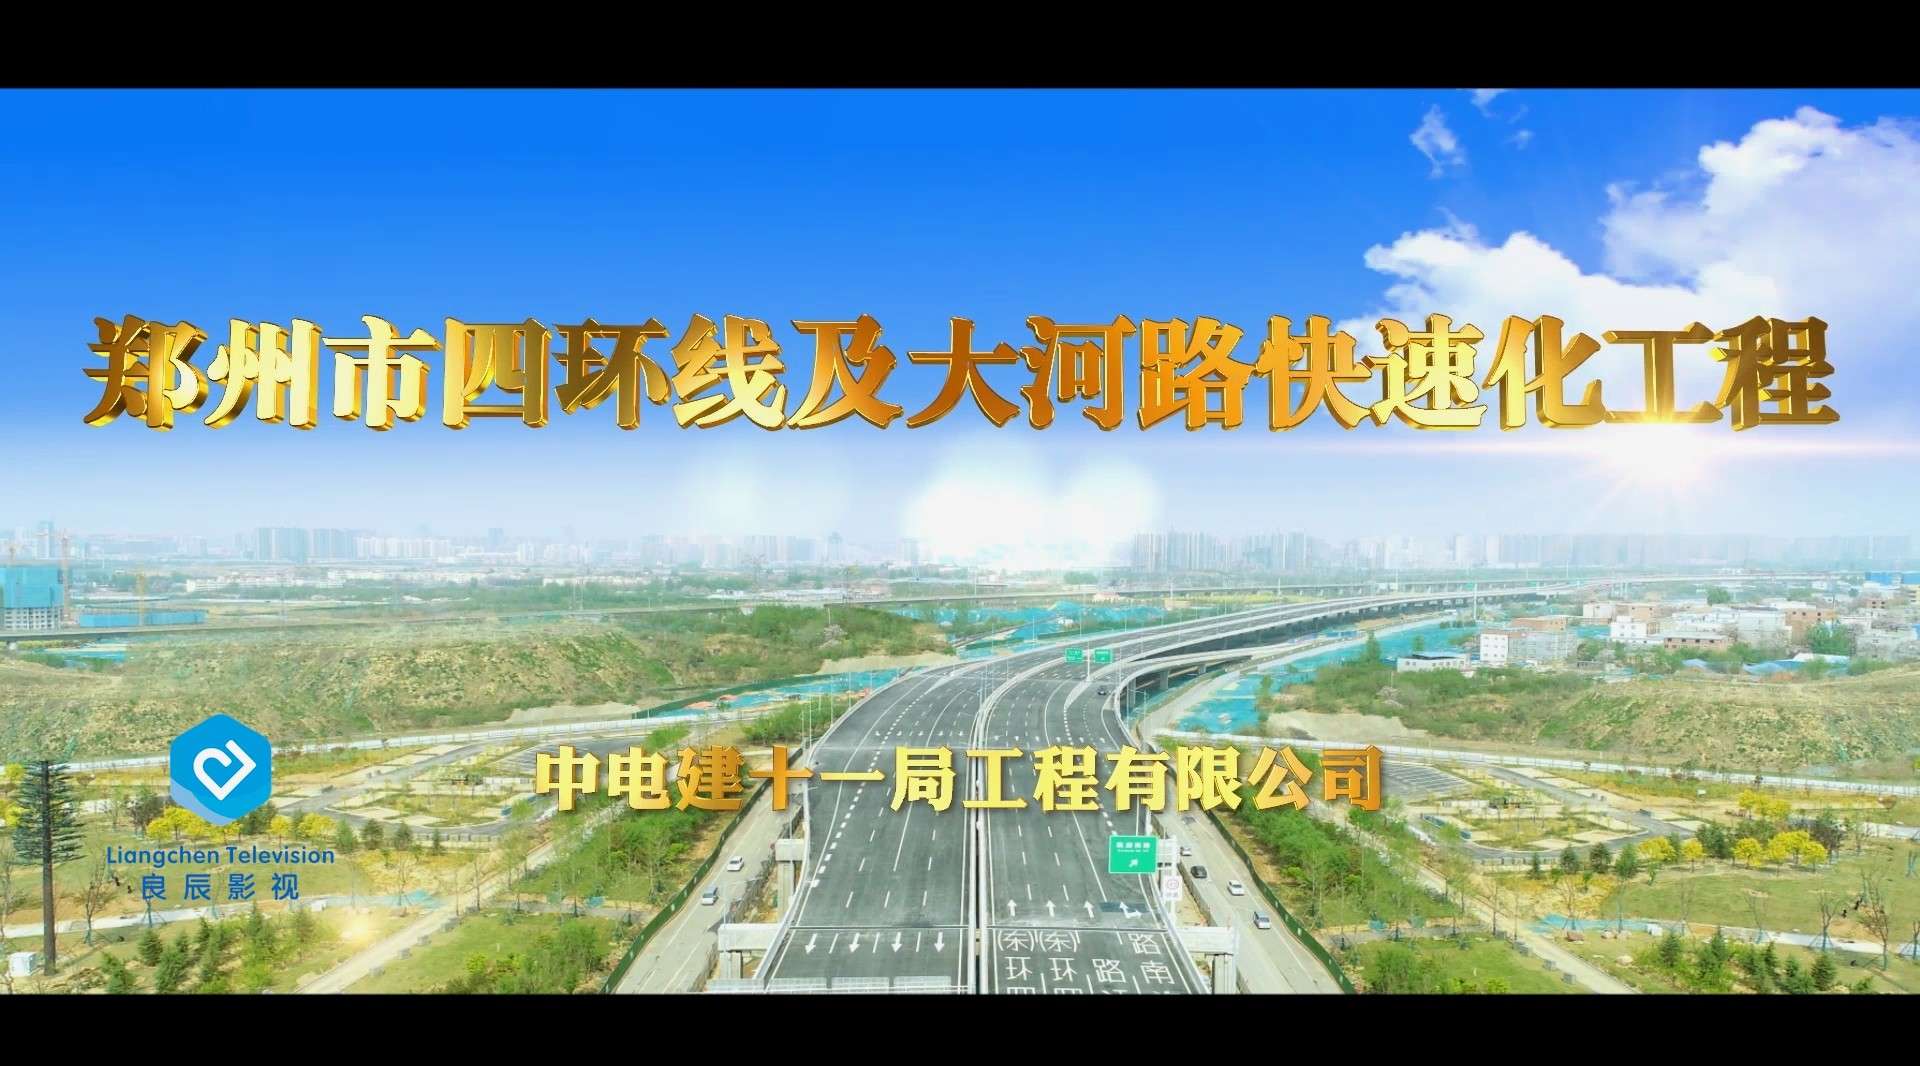 郑州市四环线及大河路快速化工程